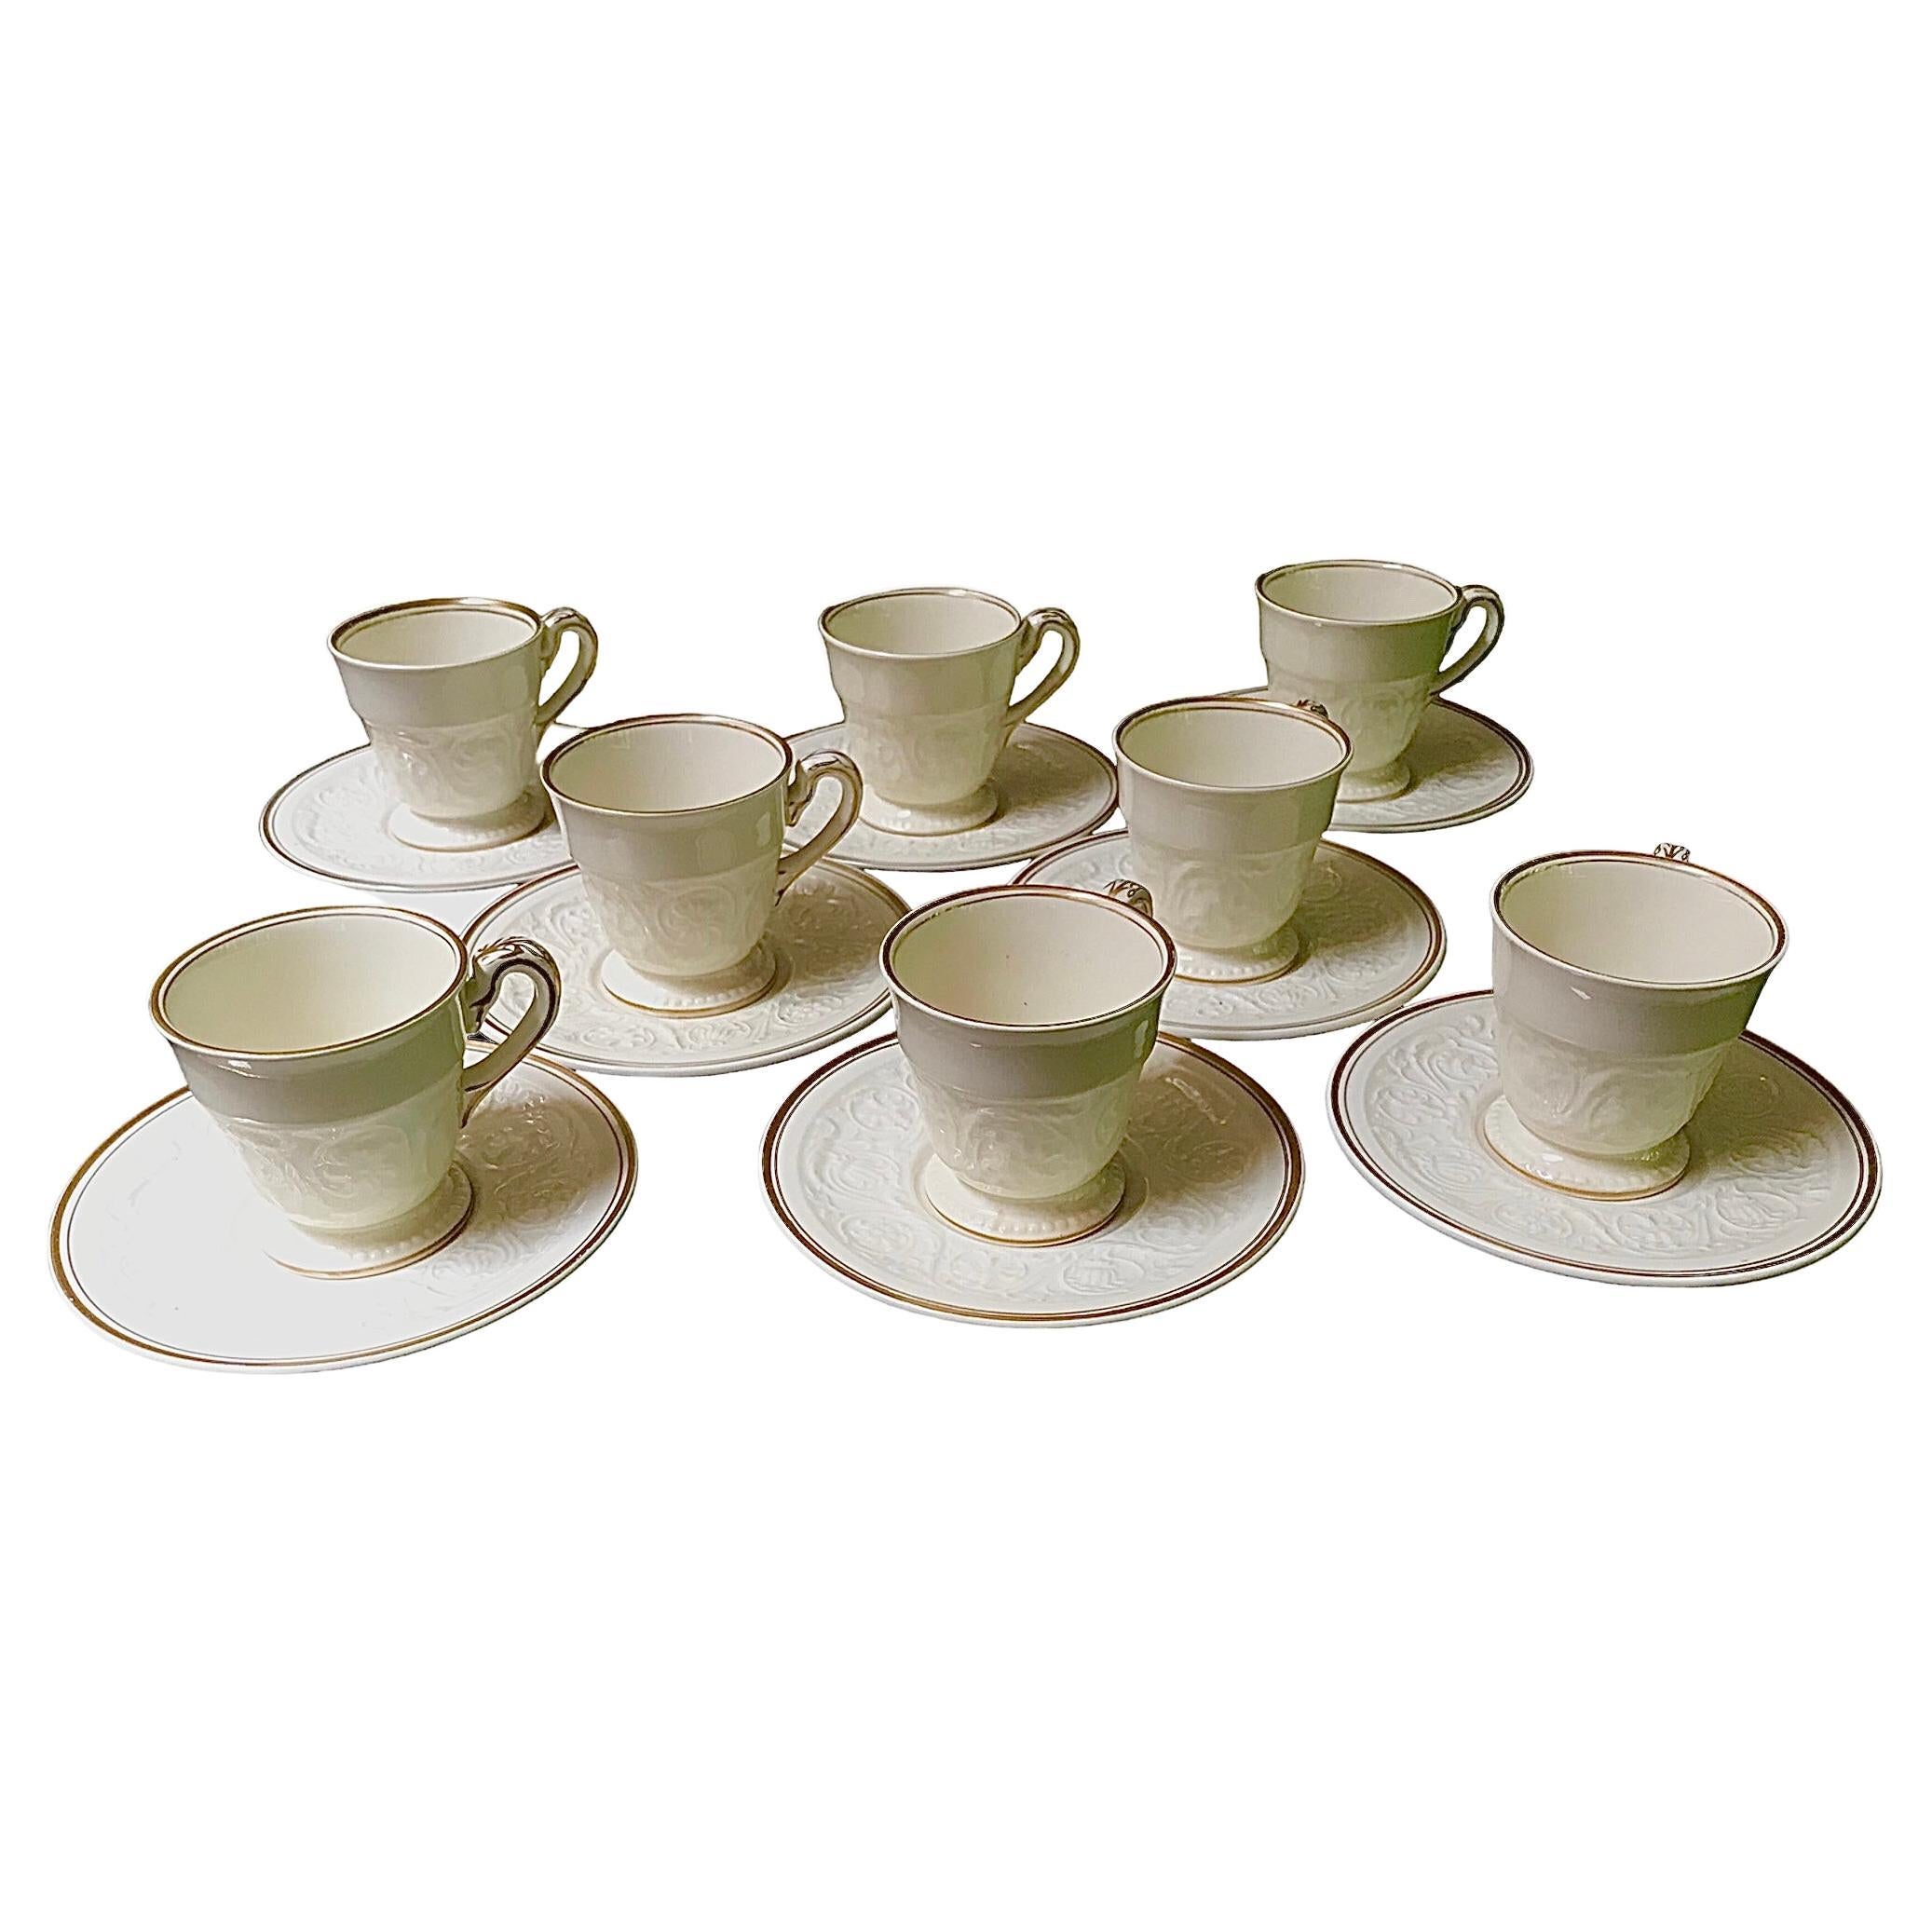 Set of 8 Wedgwood Vintage Demi Tasse Cups & Saucers Gilt Decor 1950s